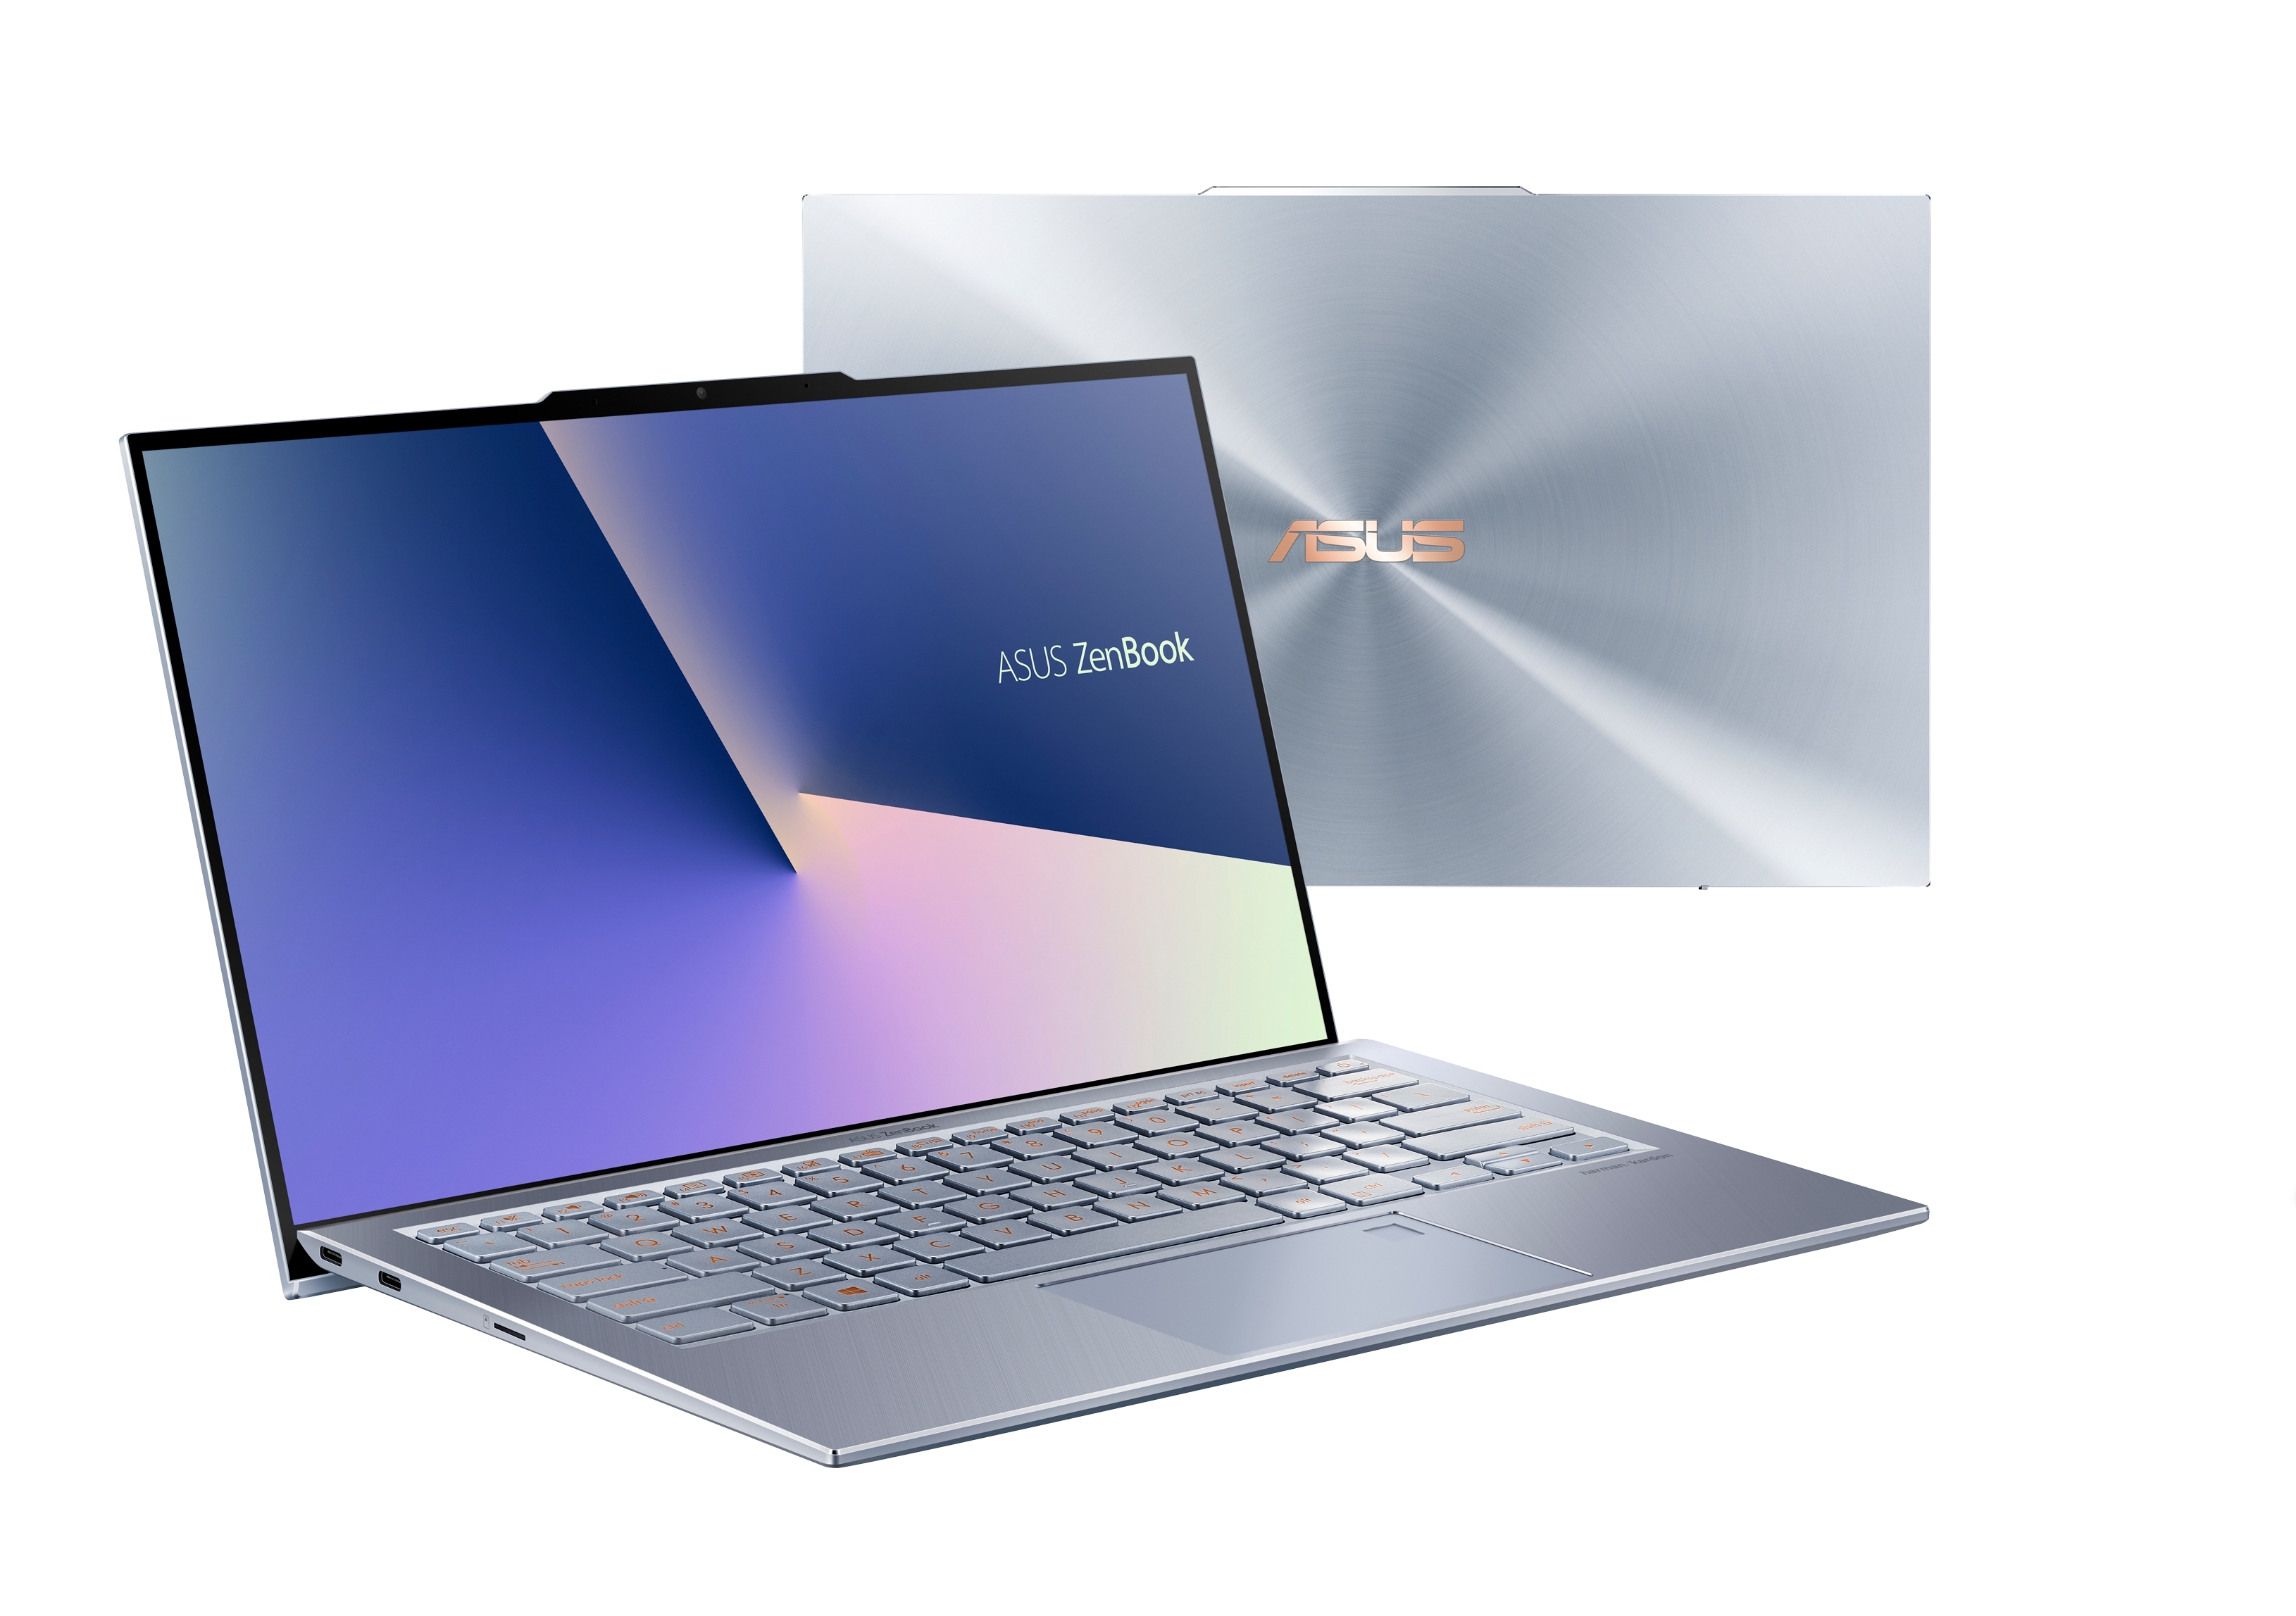 Per Adjustment Cloud ASUS Announces ZenBook S13 (UX392) | Business Wire